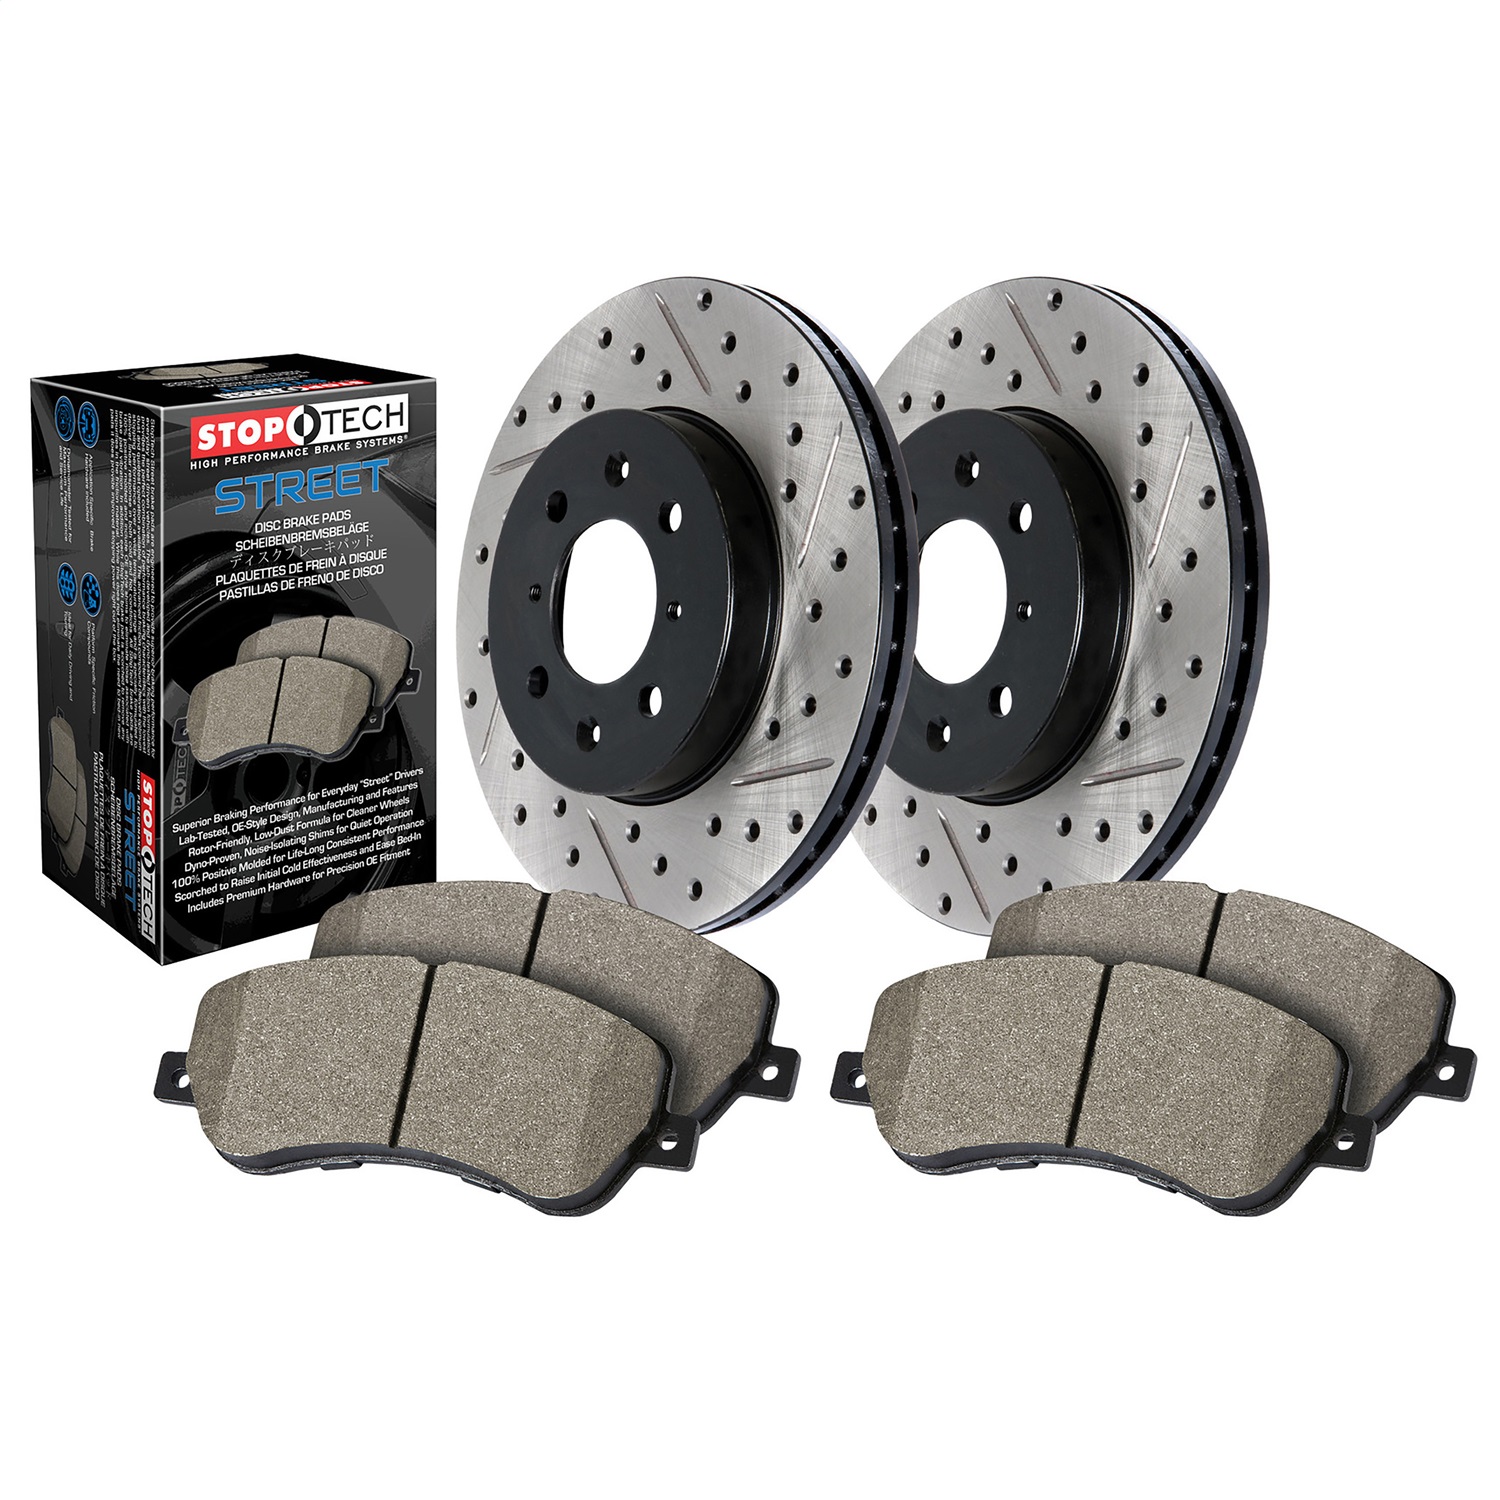 StopTech 938.33043 Disc Brake Upgrade Kit